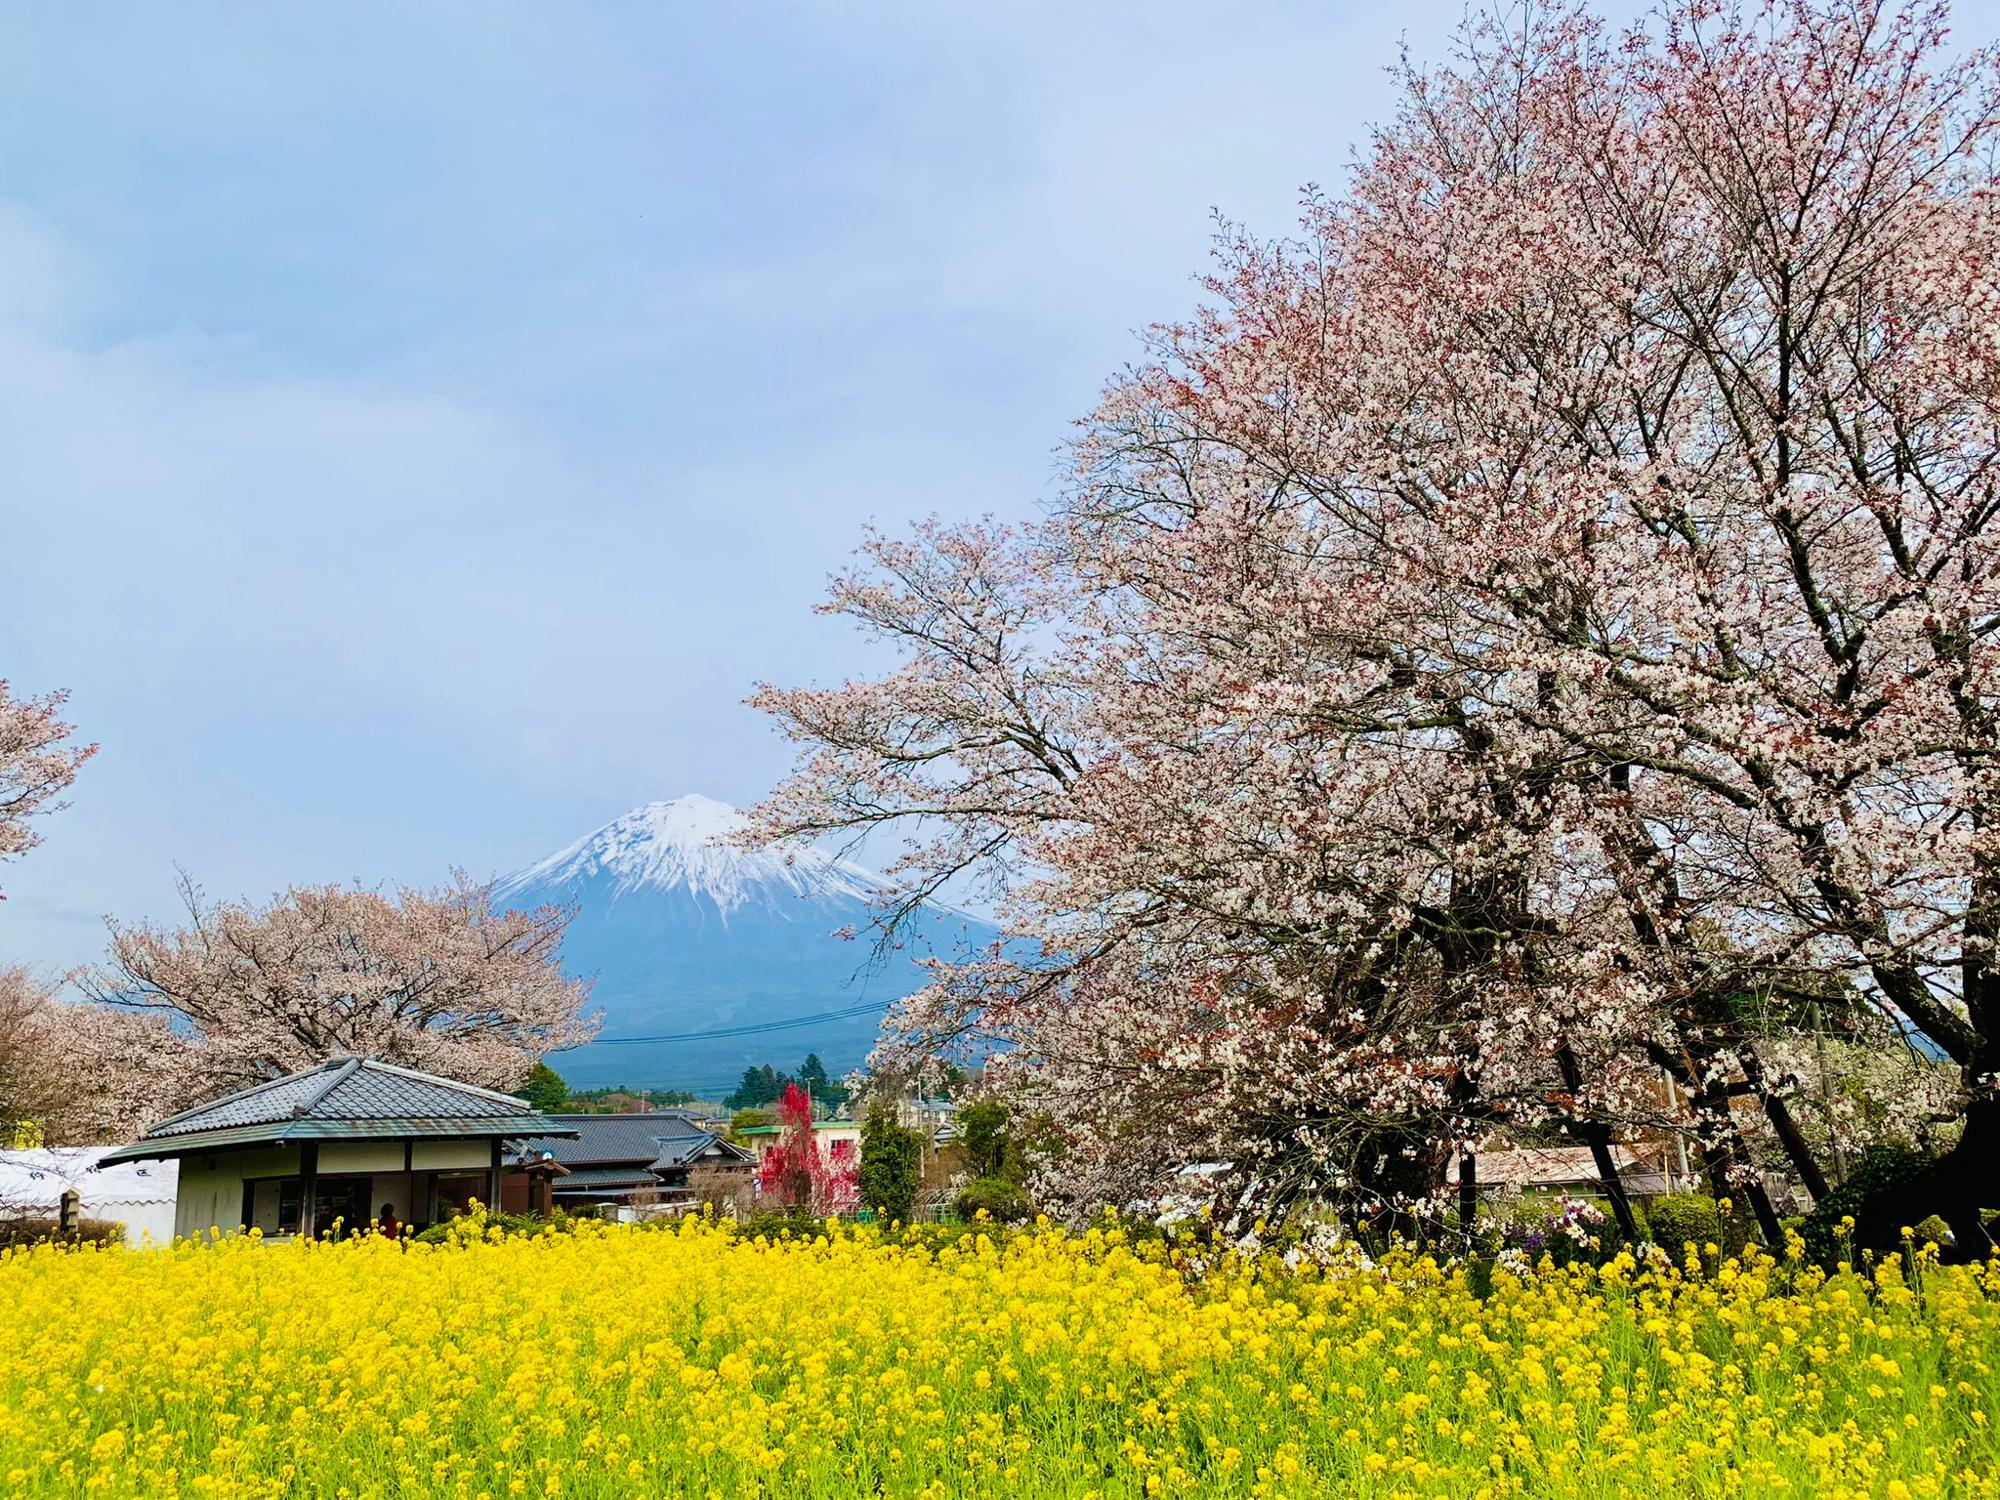 菜の花と下馬桜と富士山！申し分ない景色です